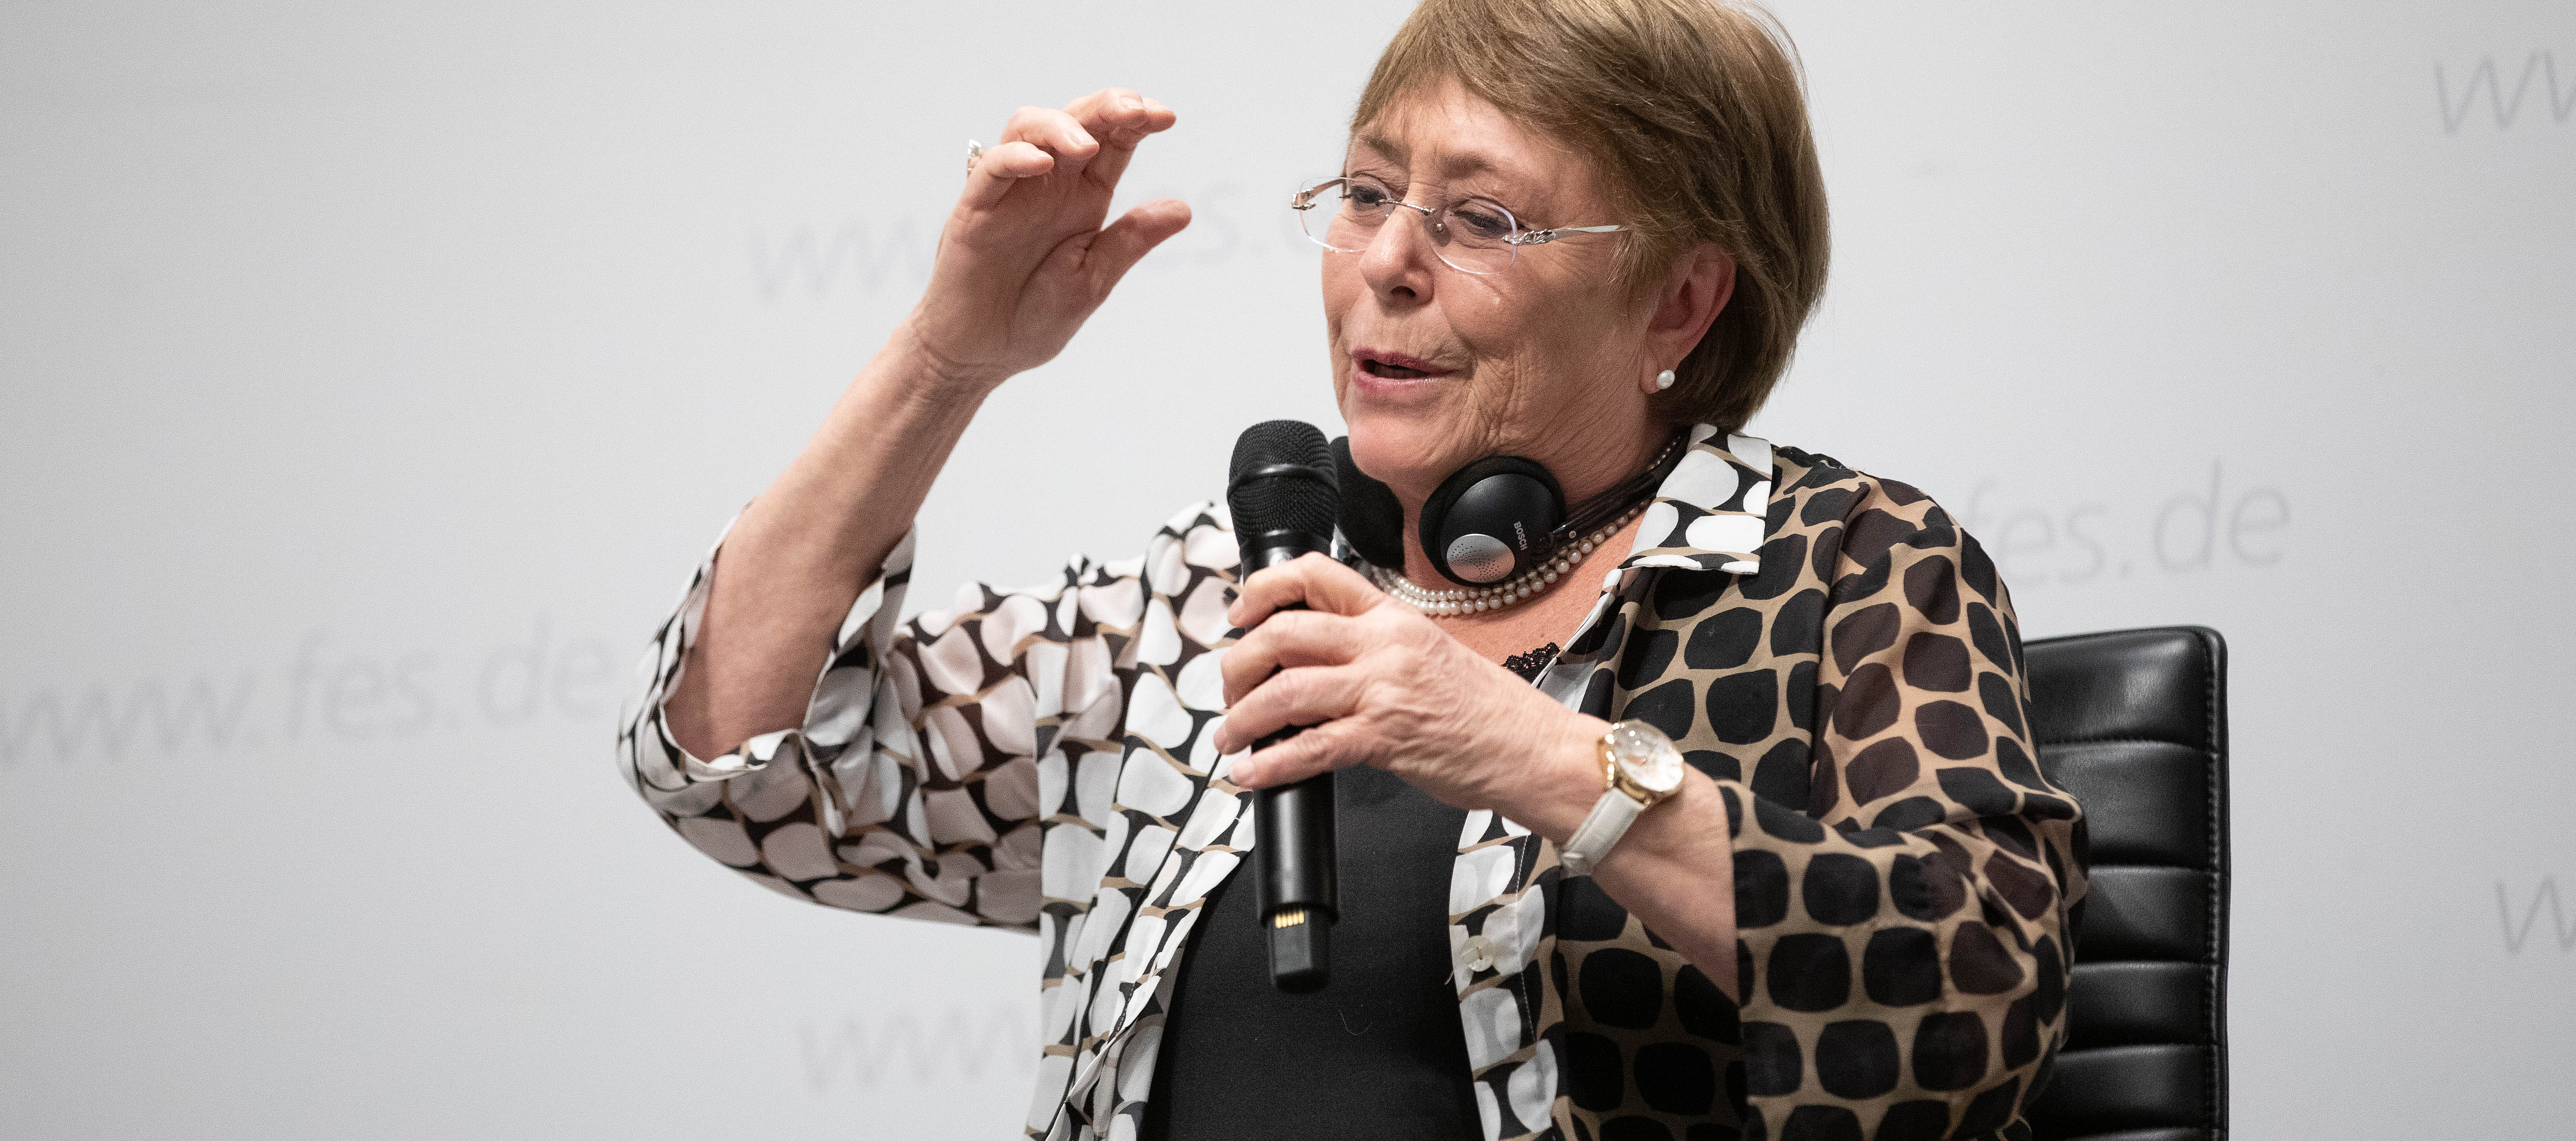 Michelle Bachelet, zweifache ehemalige Präsidentin Chiles und frühere UN-Hochkommissarin für Menschenrechte